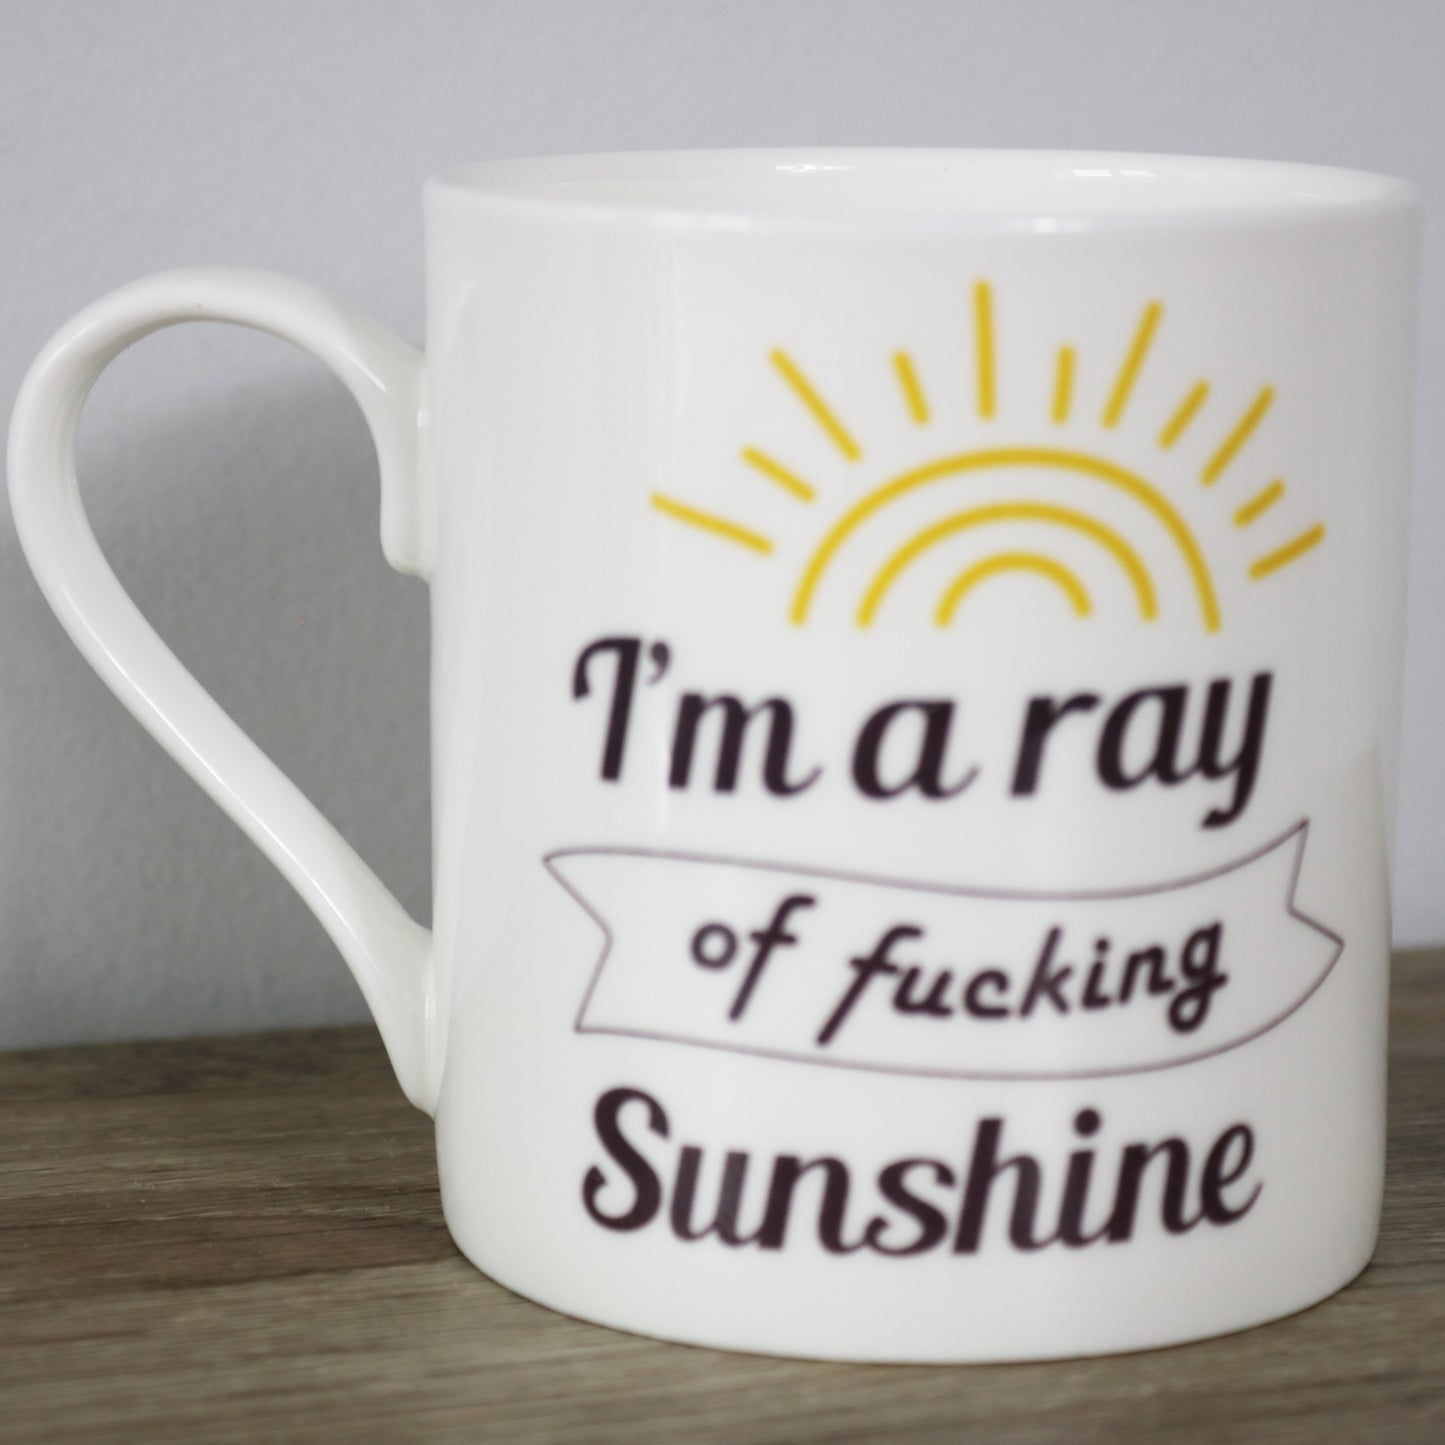 I’m a Ray of Fucking Sunshine Mug